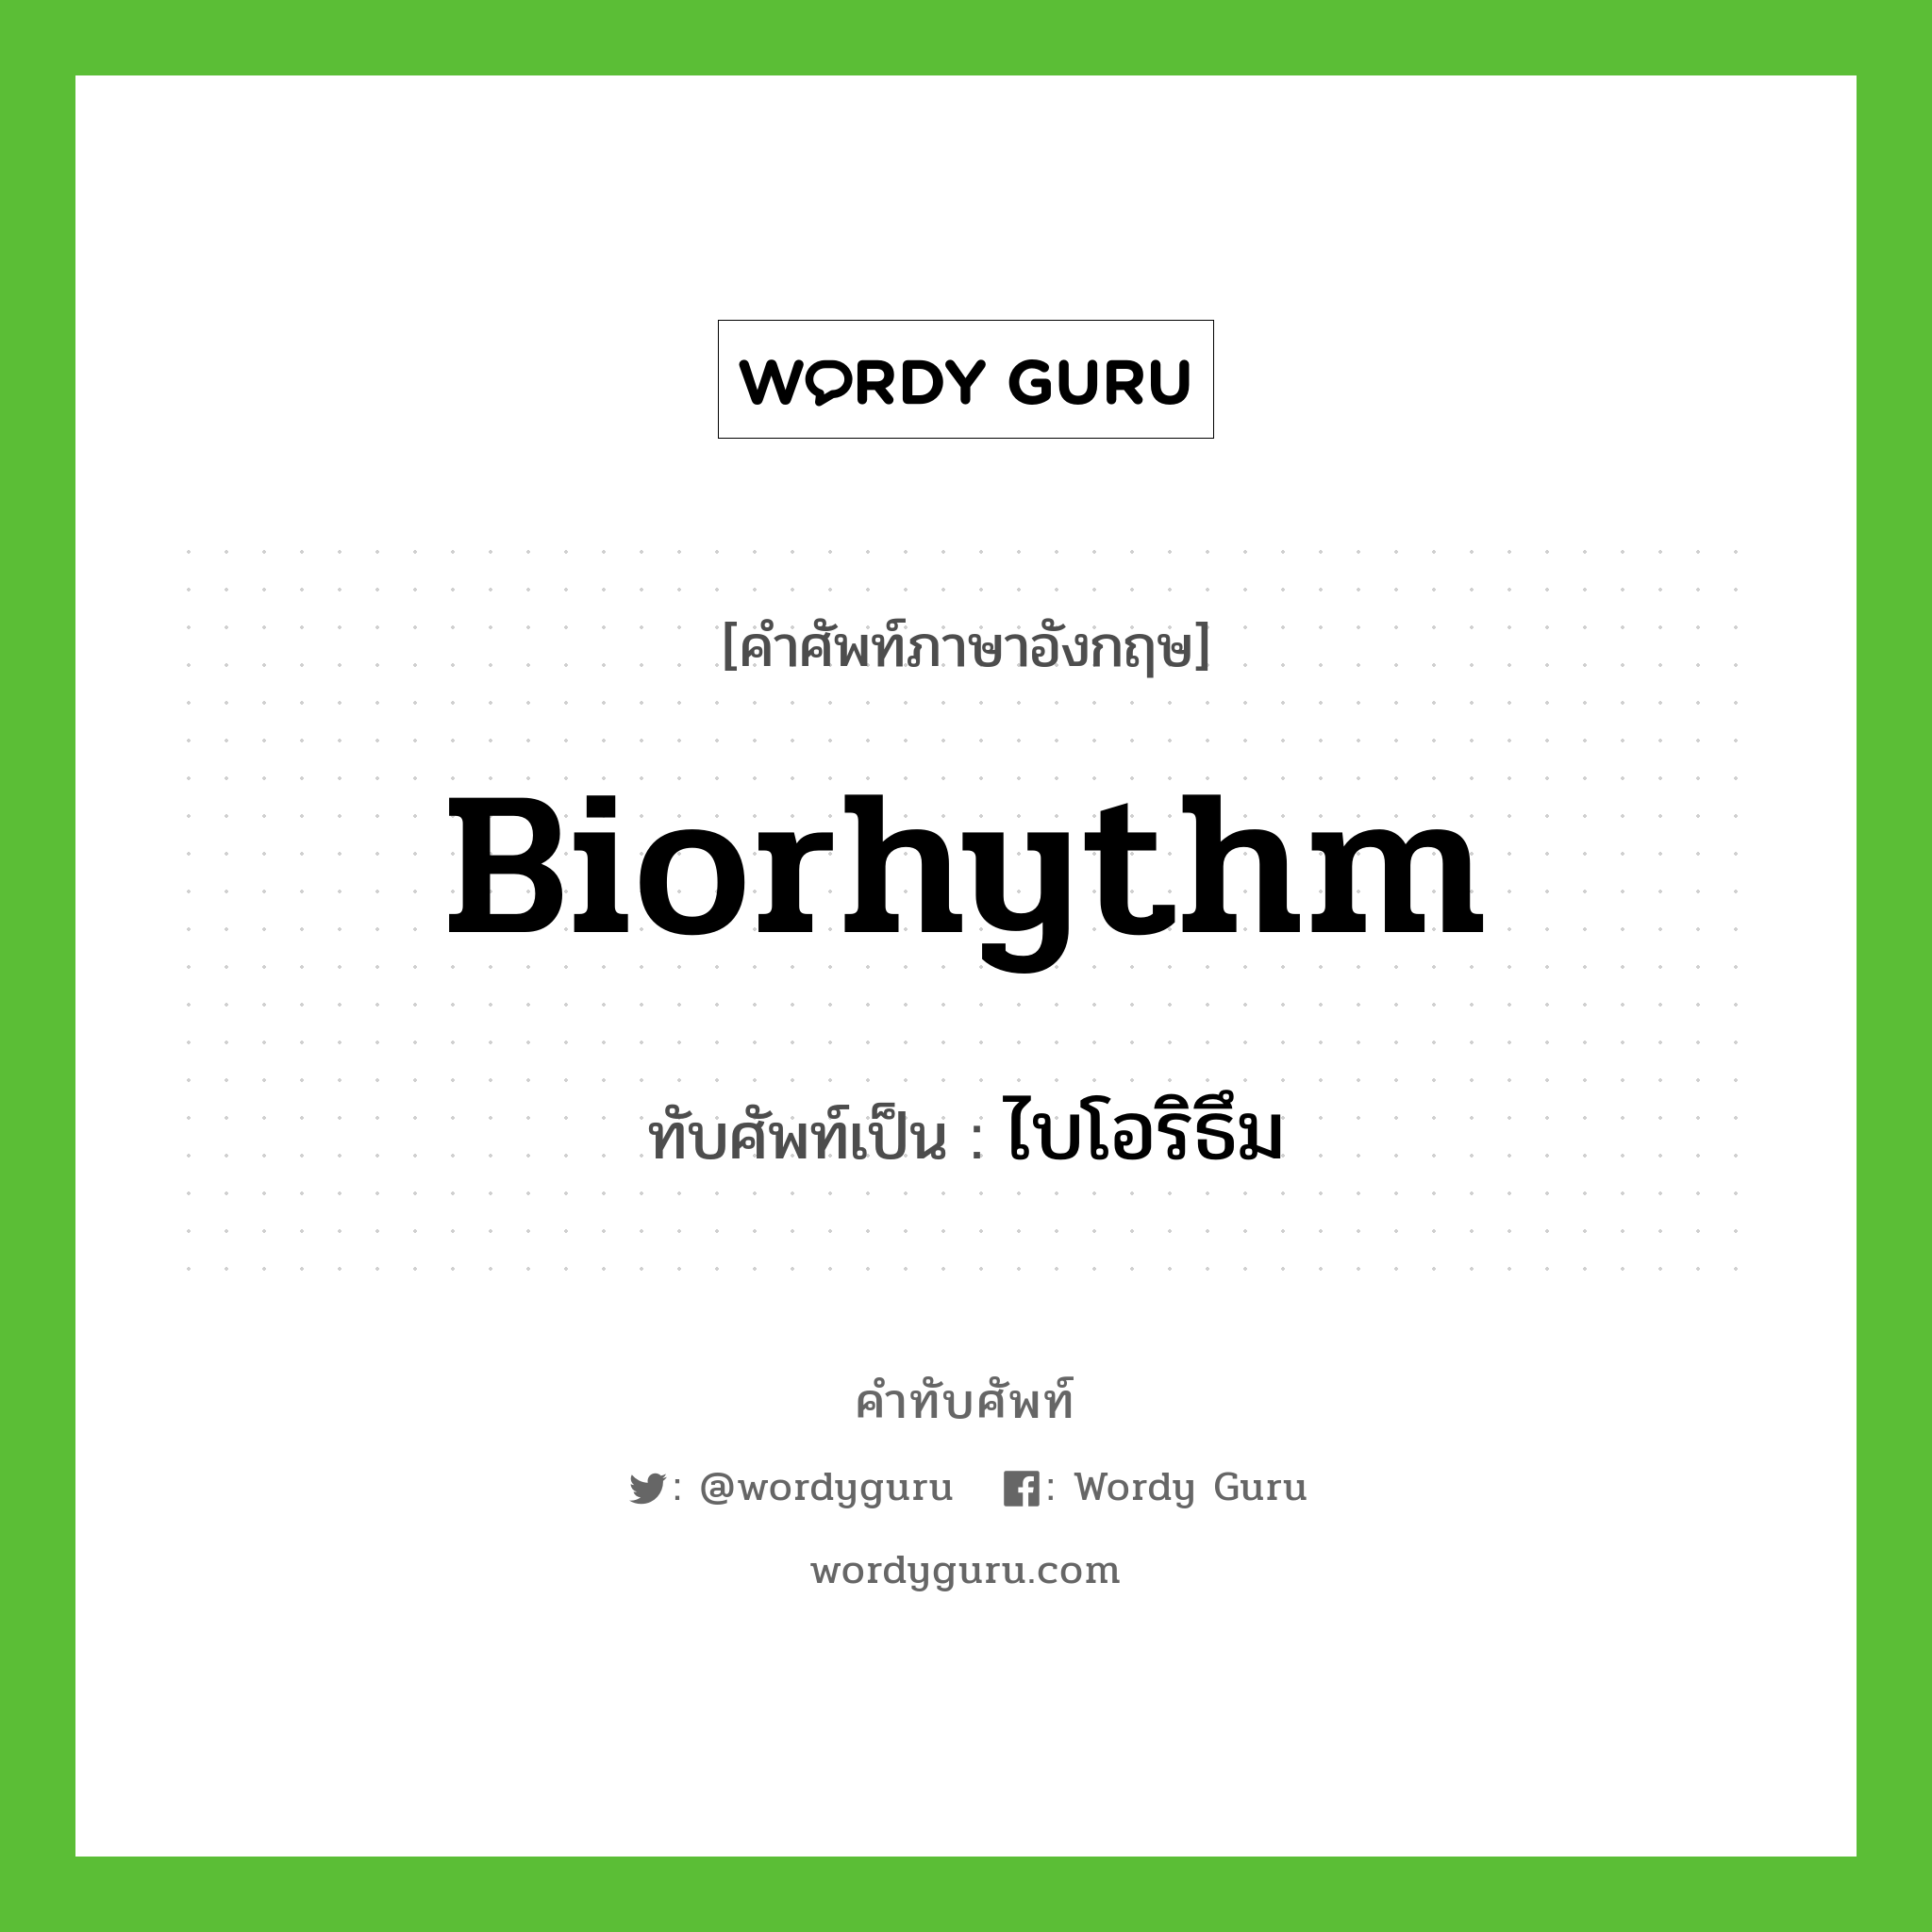 biorhythm เขียนเป็นคำไทยว่าอะไร?, คำศัพท์ภาษาอังกฤษ biorhythm ทับศัพท์เป็น ไบโอริธึม